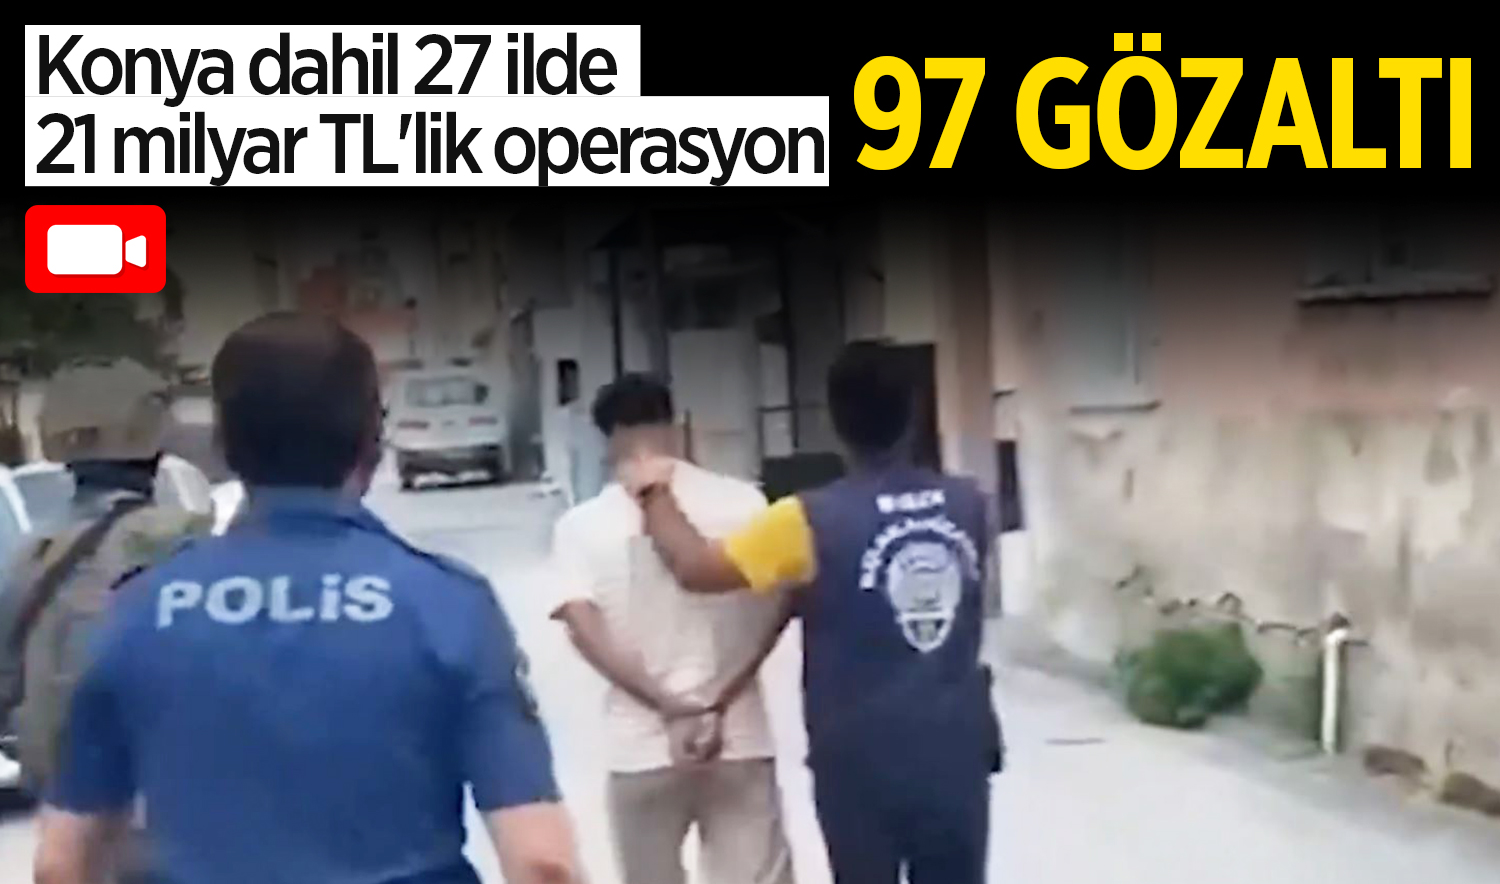 Konya dahil 27 ilde 21 milyar TL’lik operasyon: 97 kişi yakalandı